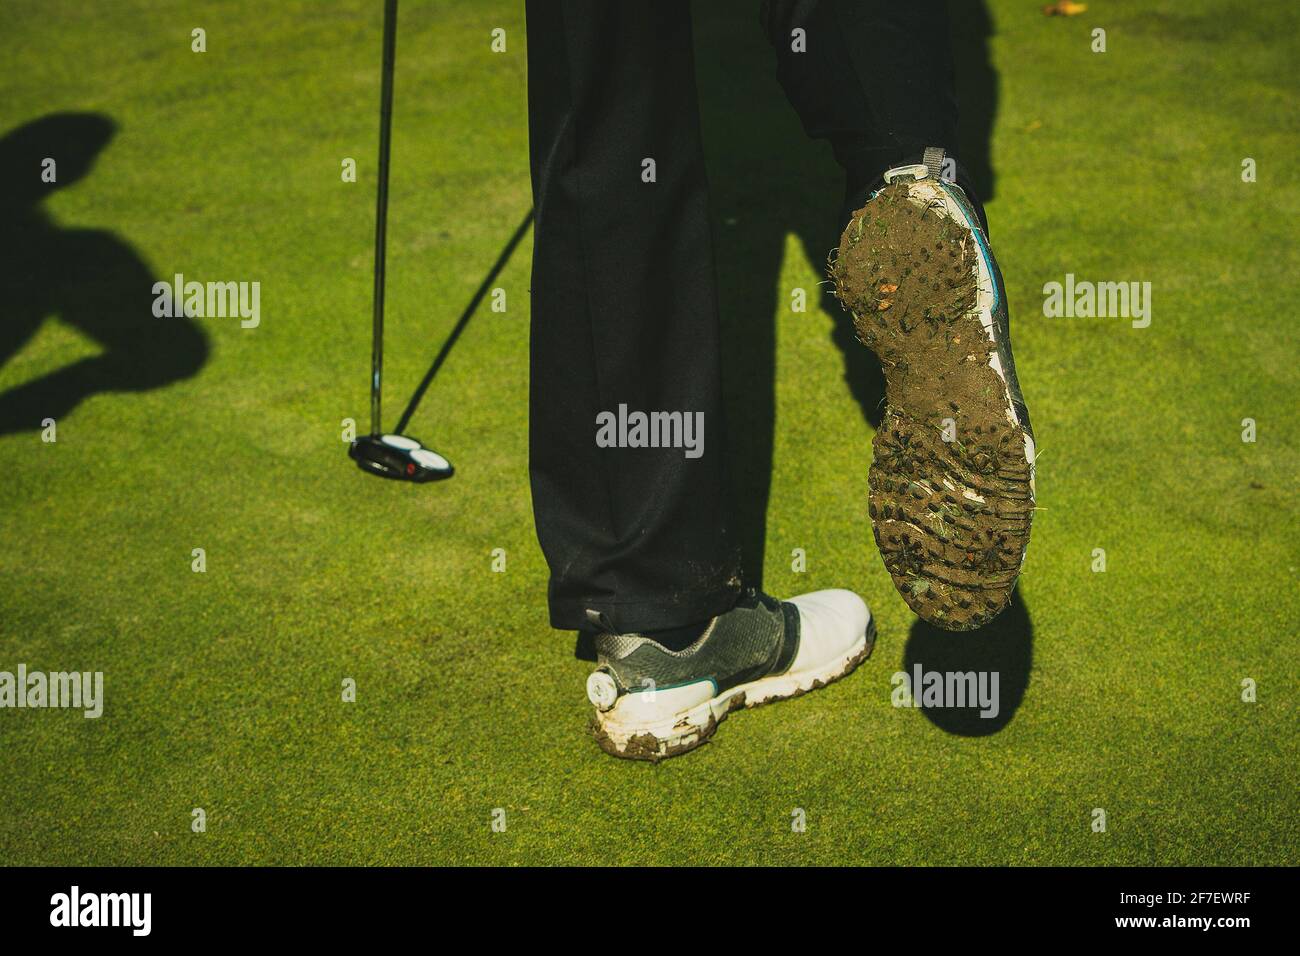 Schmutzige und schlammige Golfschuhe an einer Person, die einen Golfschläger hält. Stockfoto